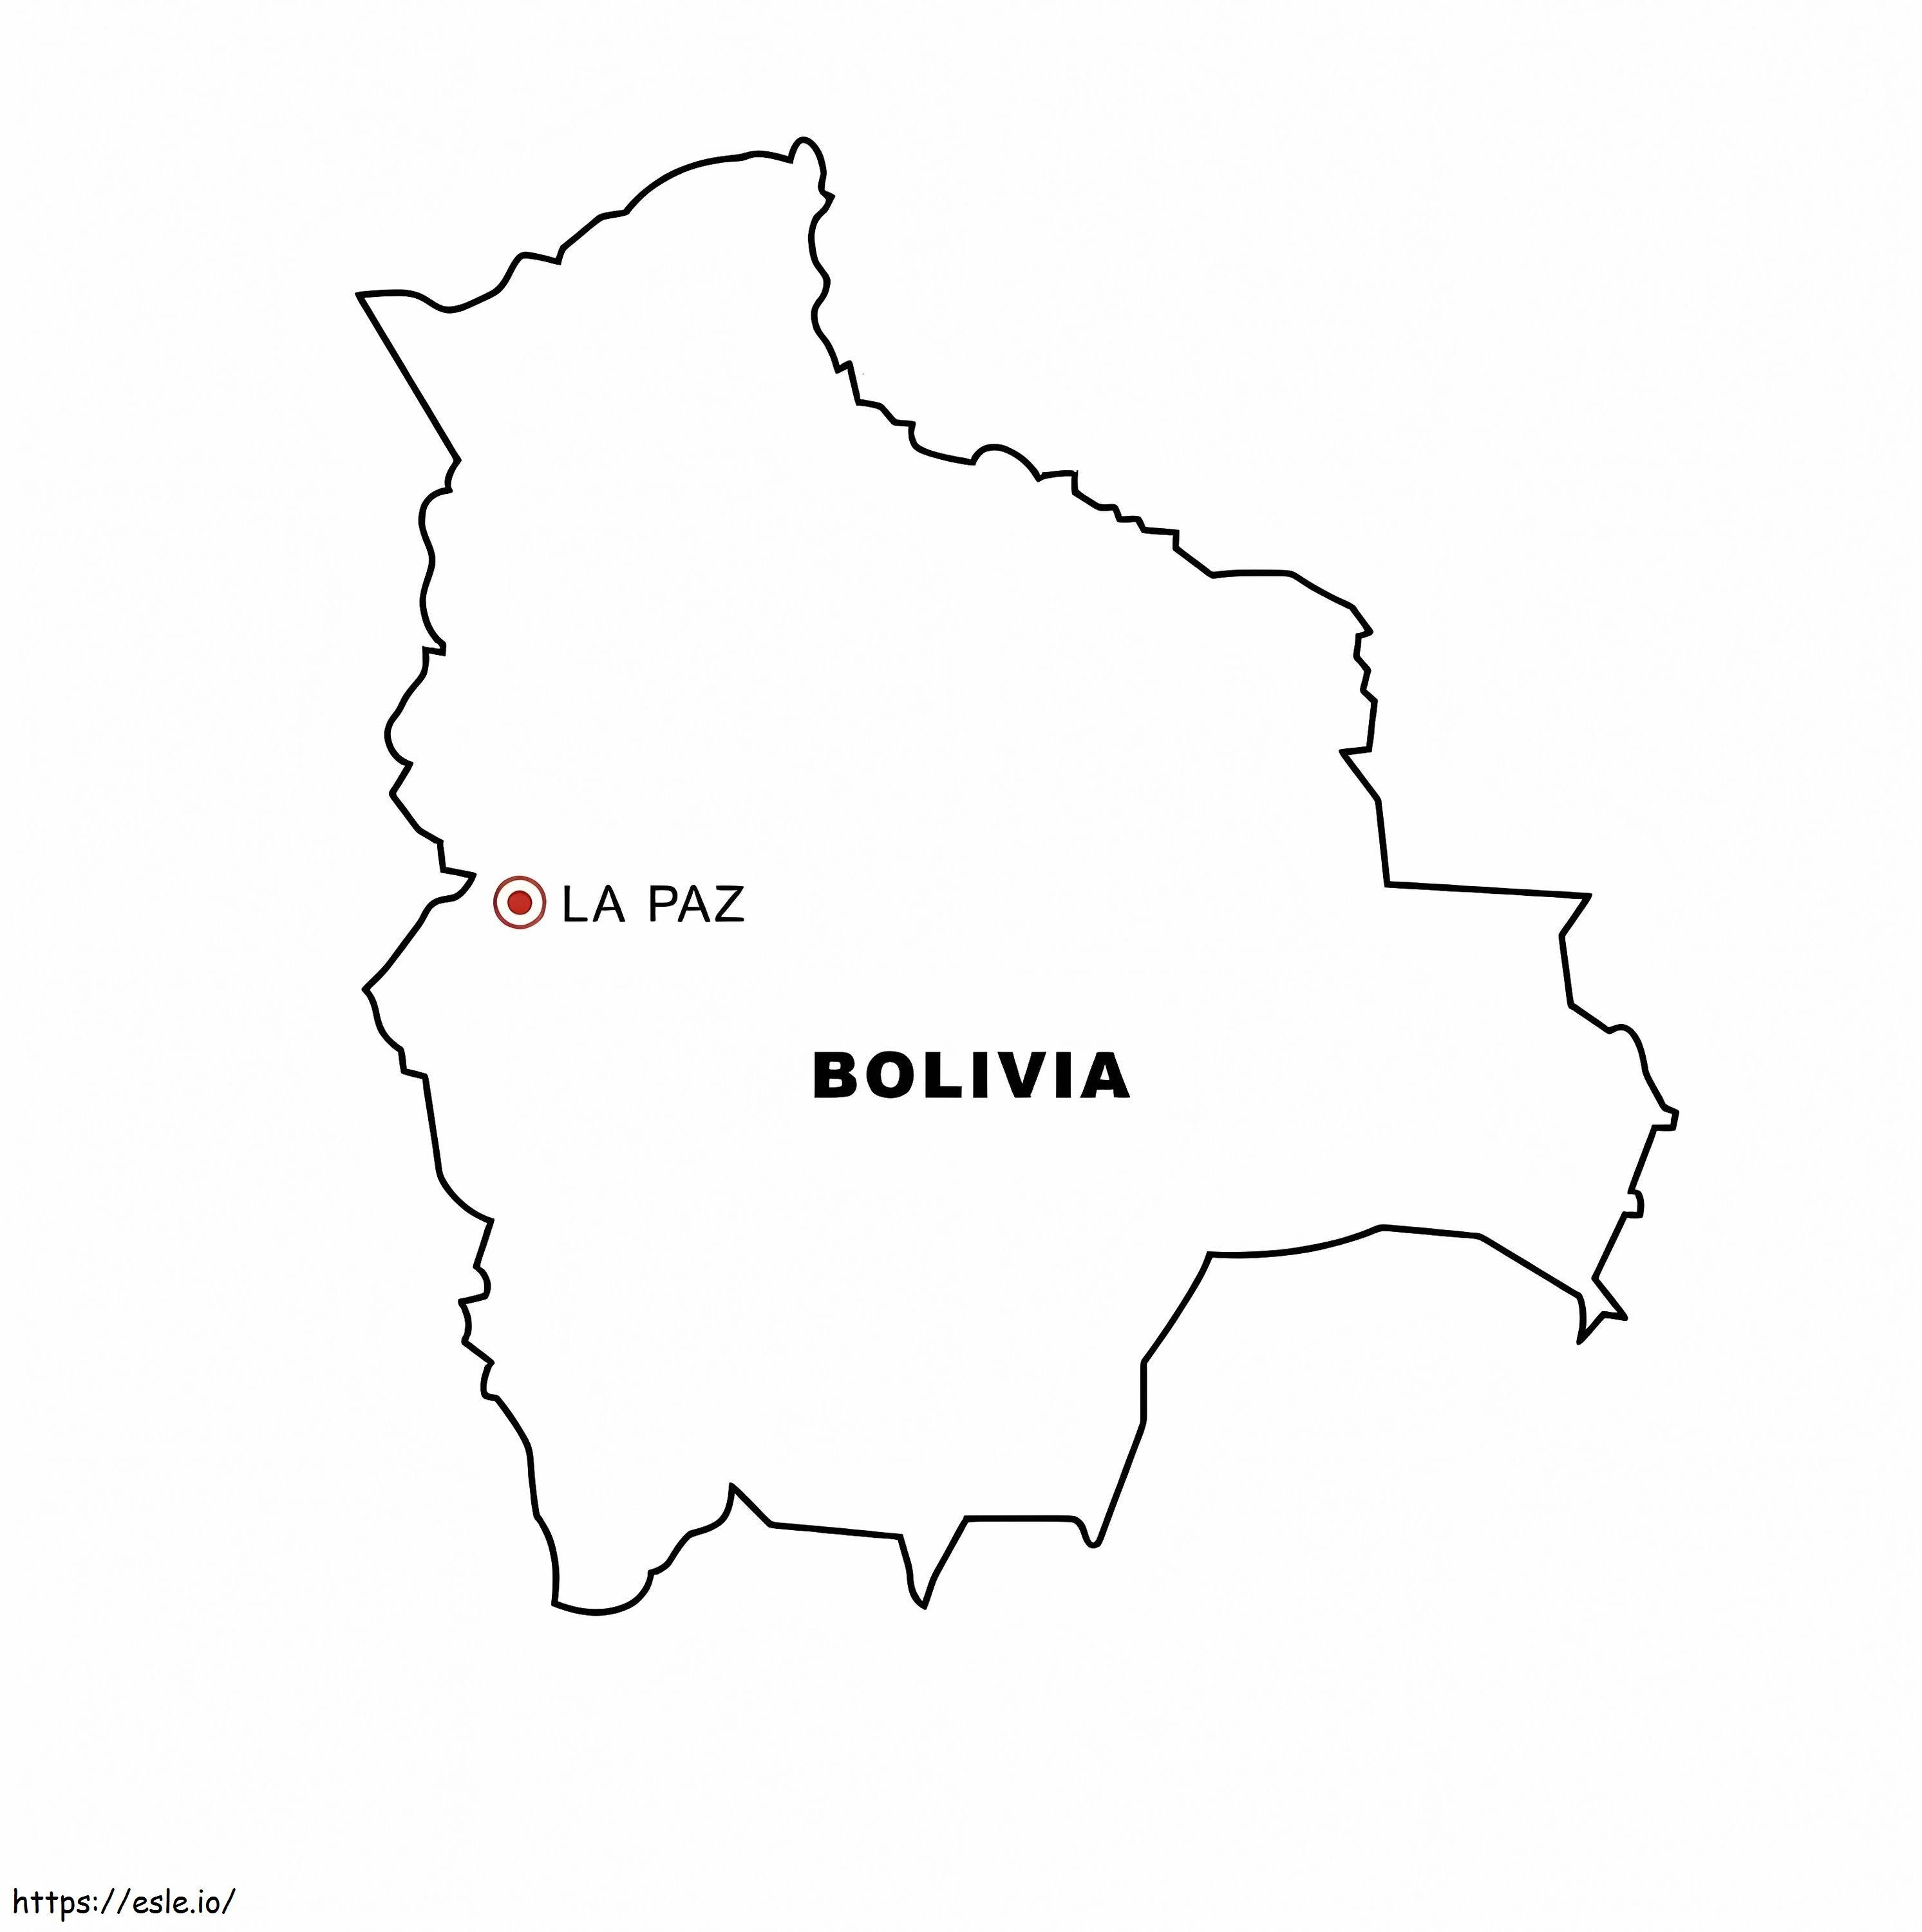 Tyhjä Bolivian kartta HD-kuvan väritystä varten värityskuva